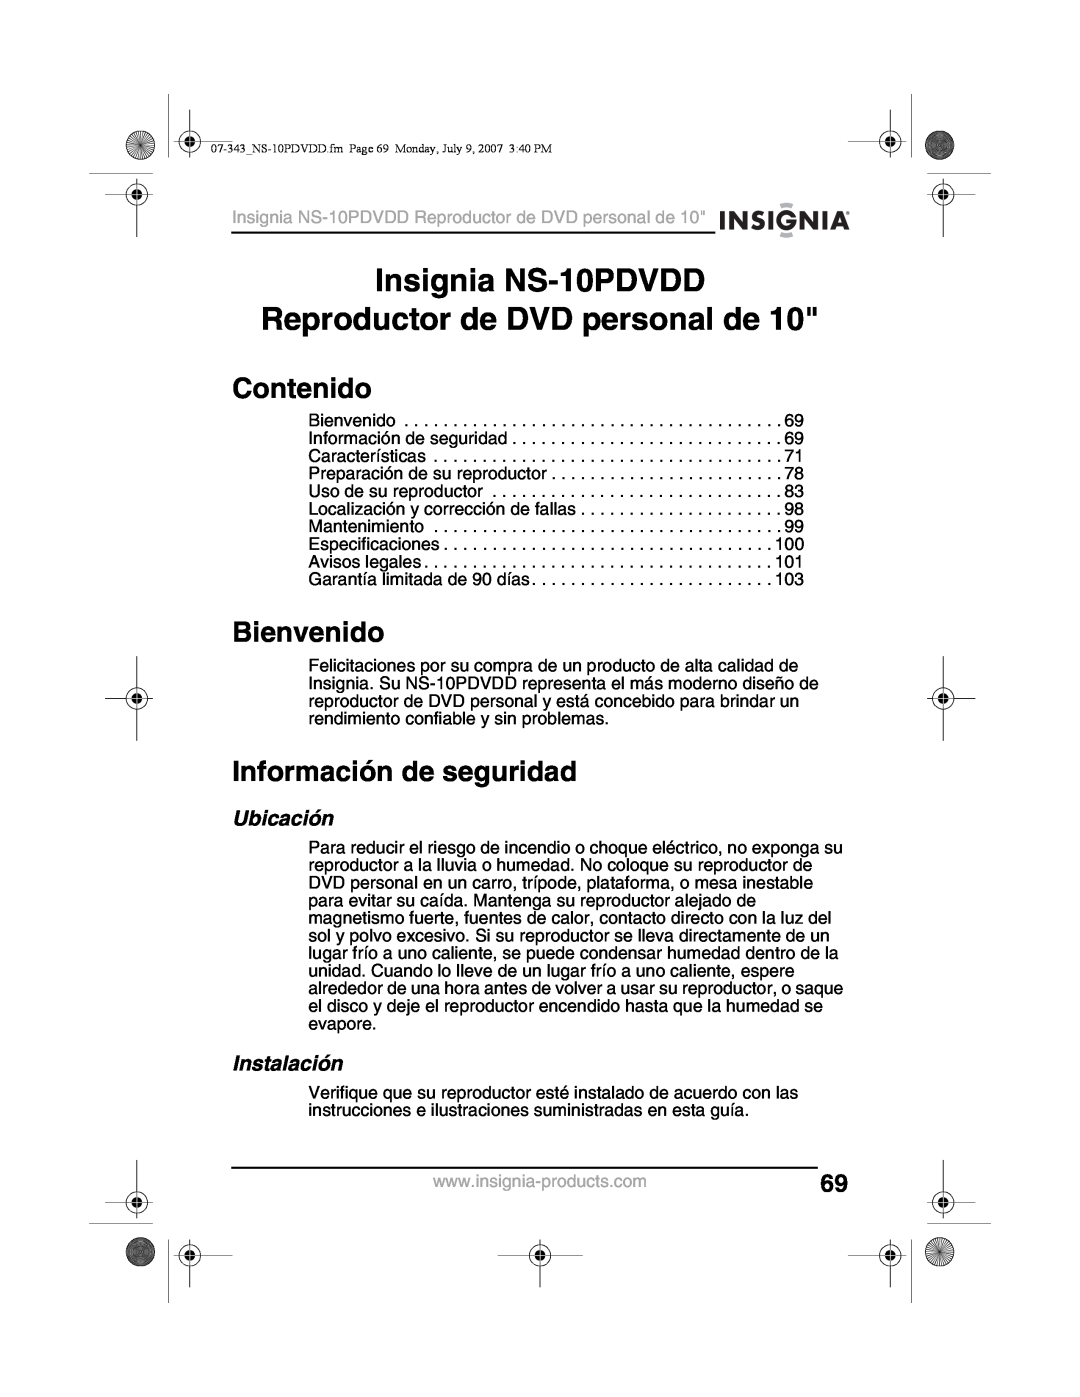 Insignia Insignia NS-10PDVDD Reproductor de DVD personal de, Contenido, Bienvenido, Información de seguridad, Ubicación 